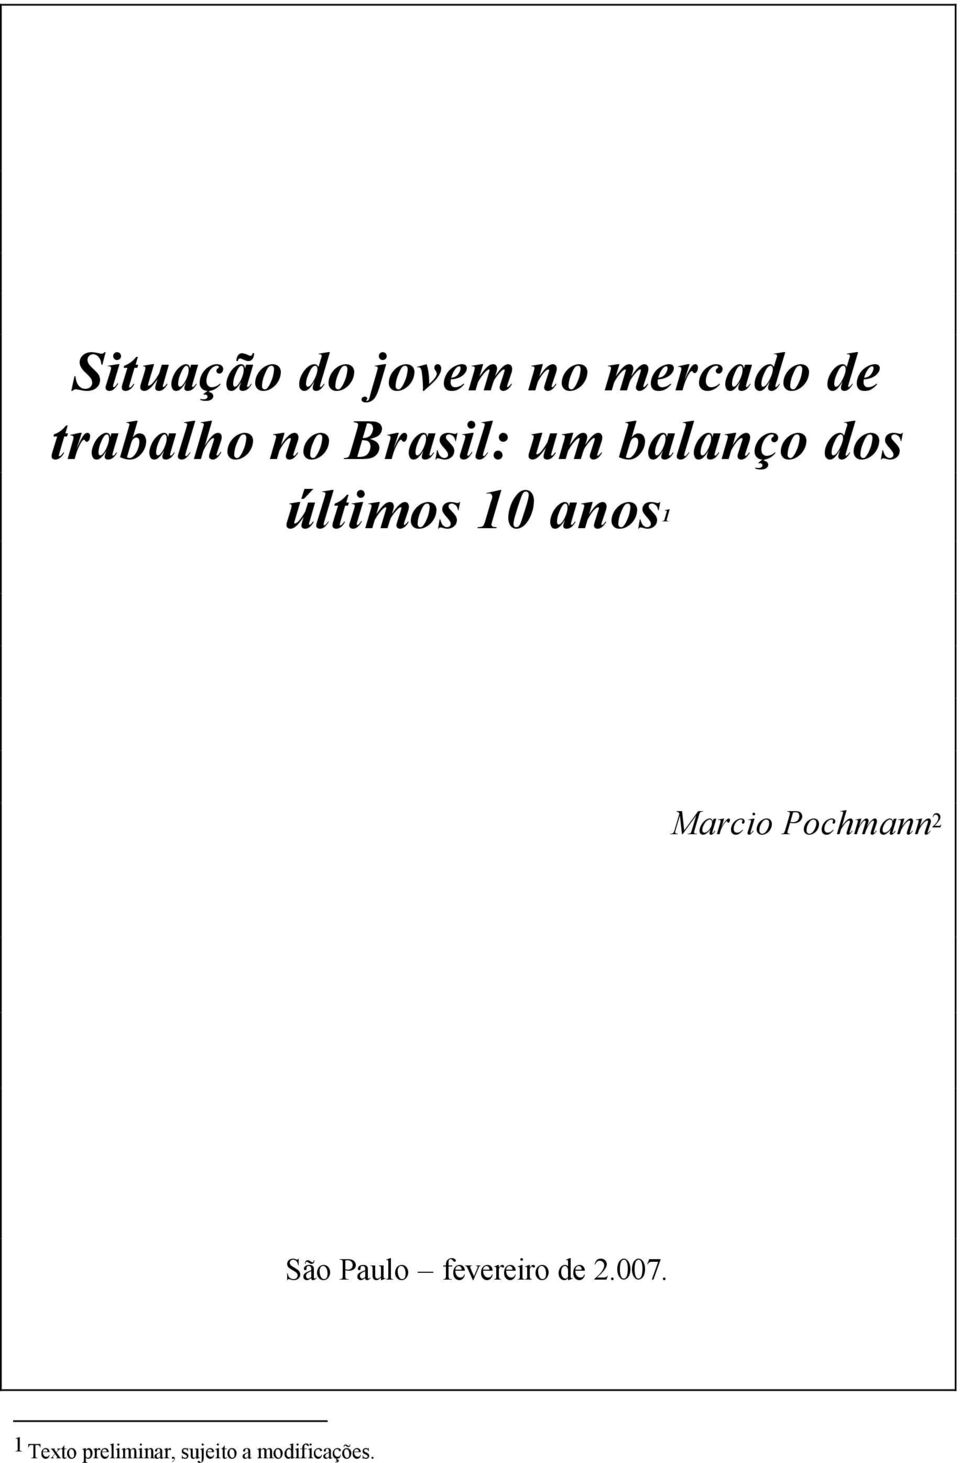 Marcio Pochmann 2 São Paulo fevereiro de 2.